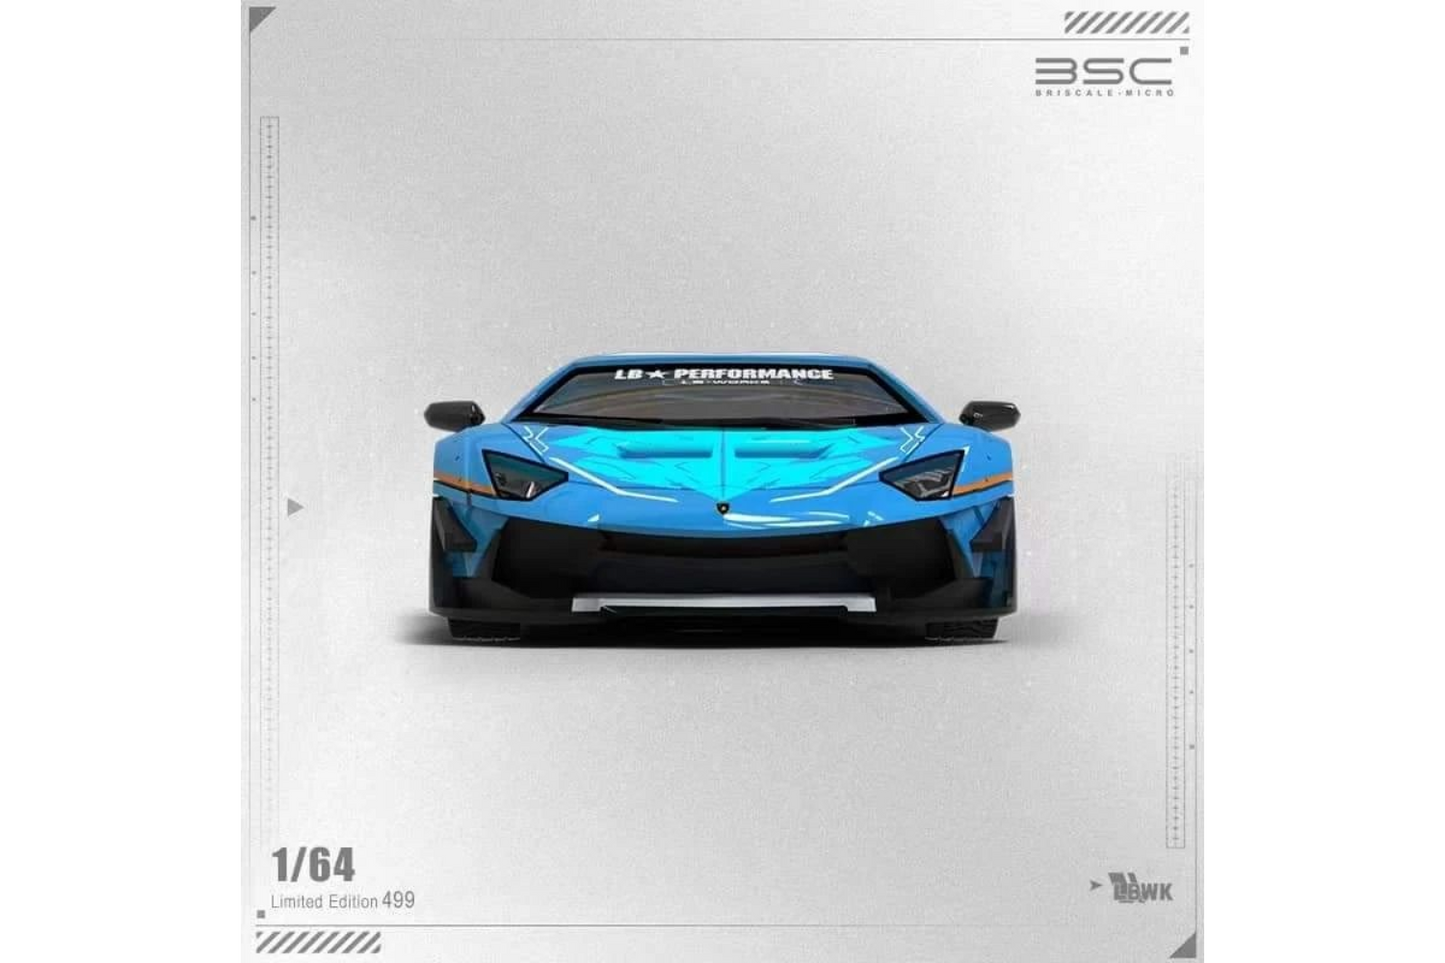 BriscaleMicro 1/64 Lamborghini Aventador LP700-4 LBWK in "Forza Motorsport Honkai 3" Livery